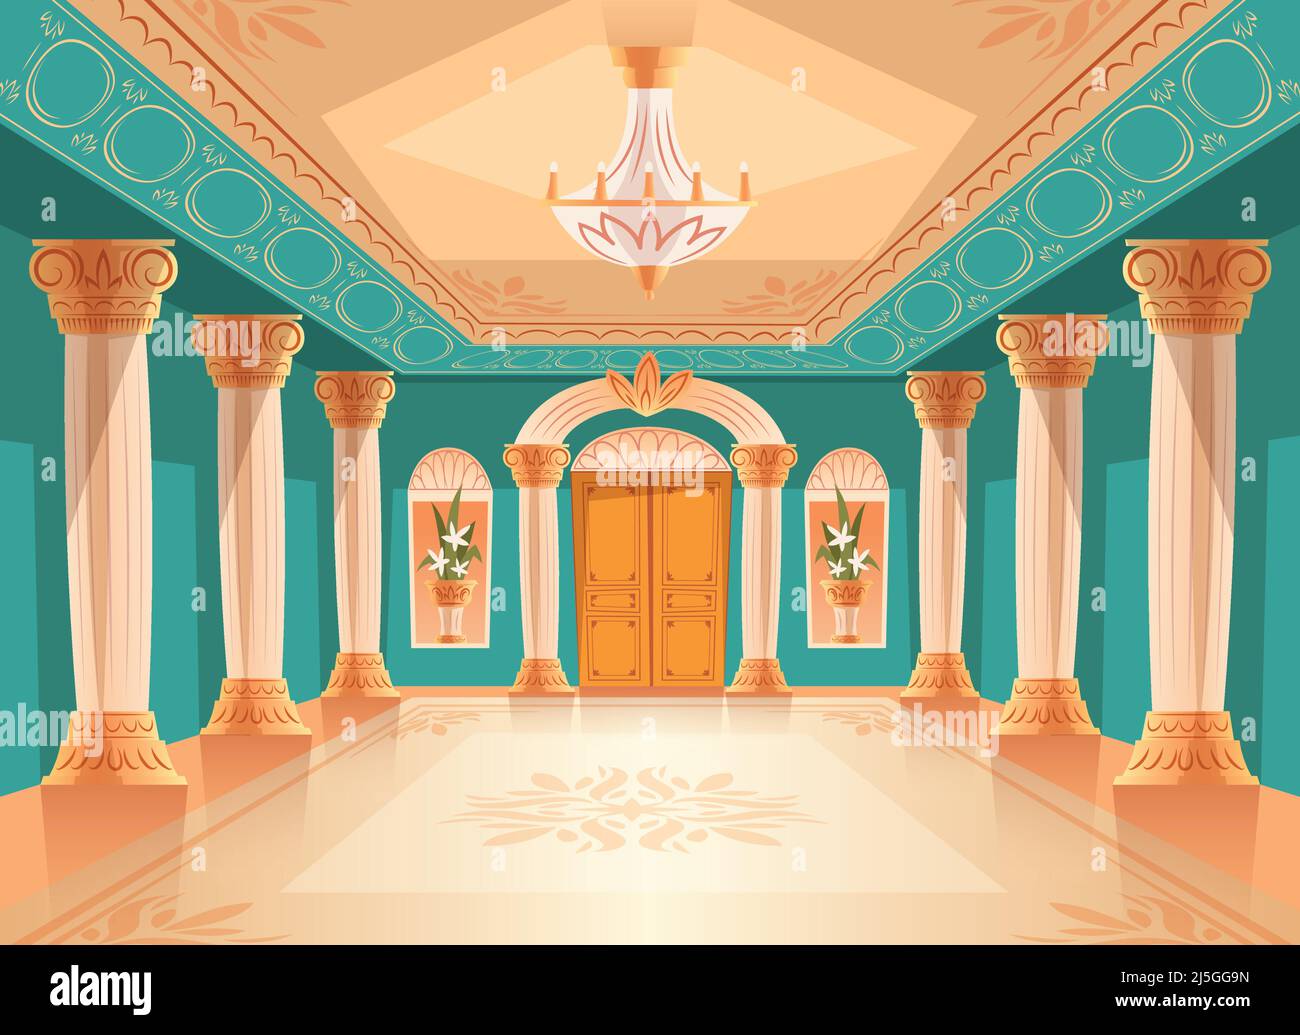 Salle de bal ou salle de réception du palais illustration vectorielle d'un musée ou d'une chambre de luxe. Fond intérieur bleu roi avec lustre, vases Illustration de Vecteur